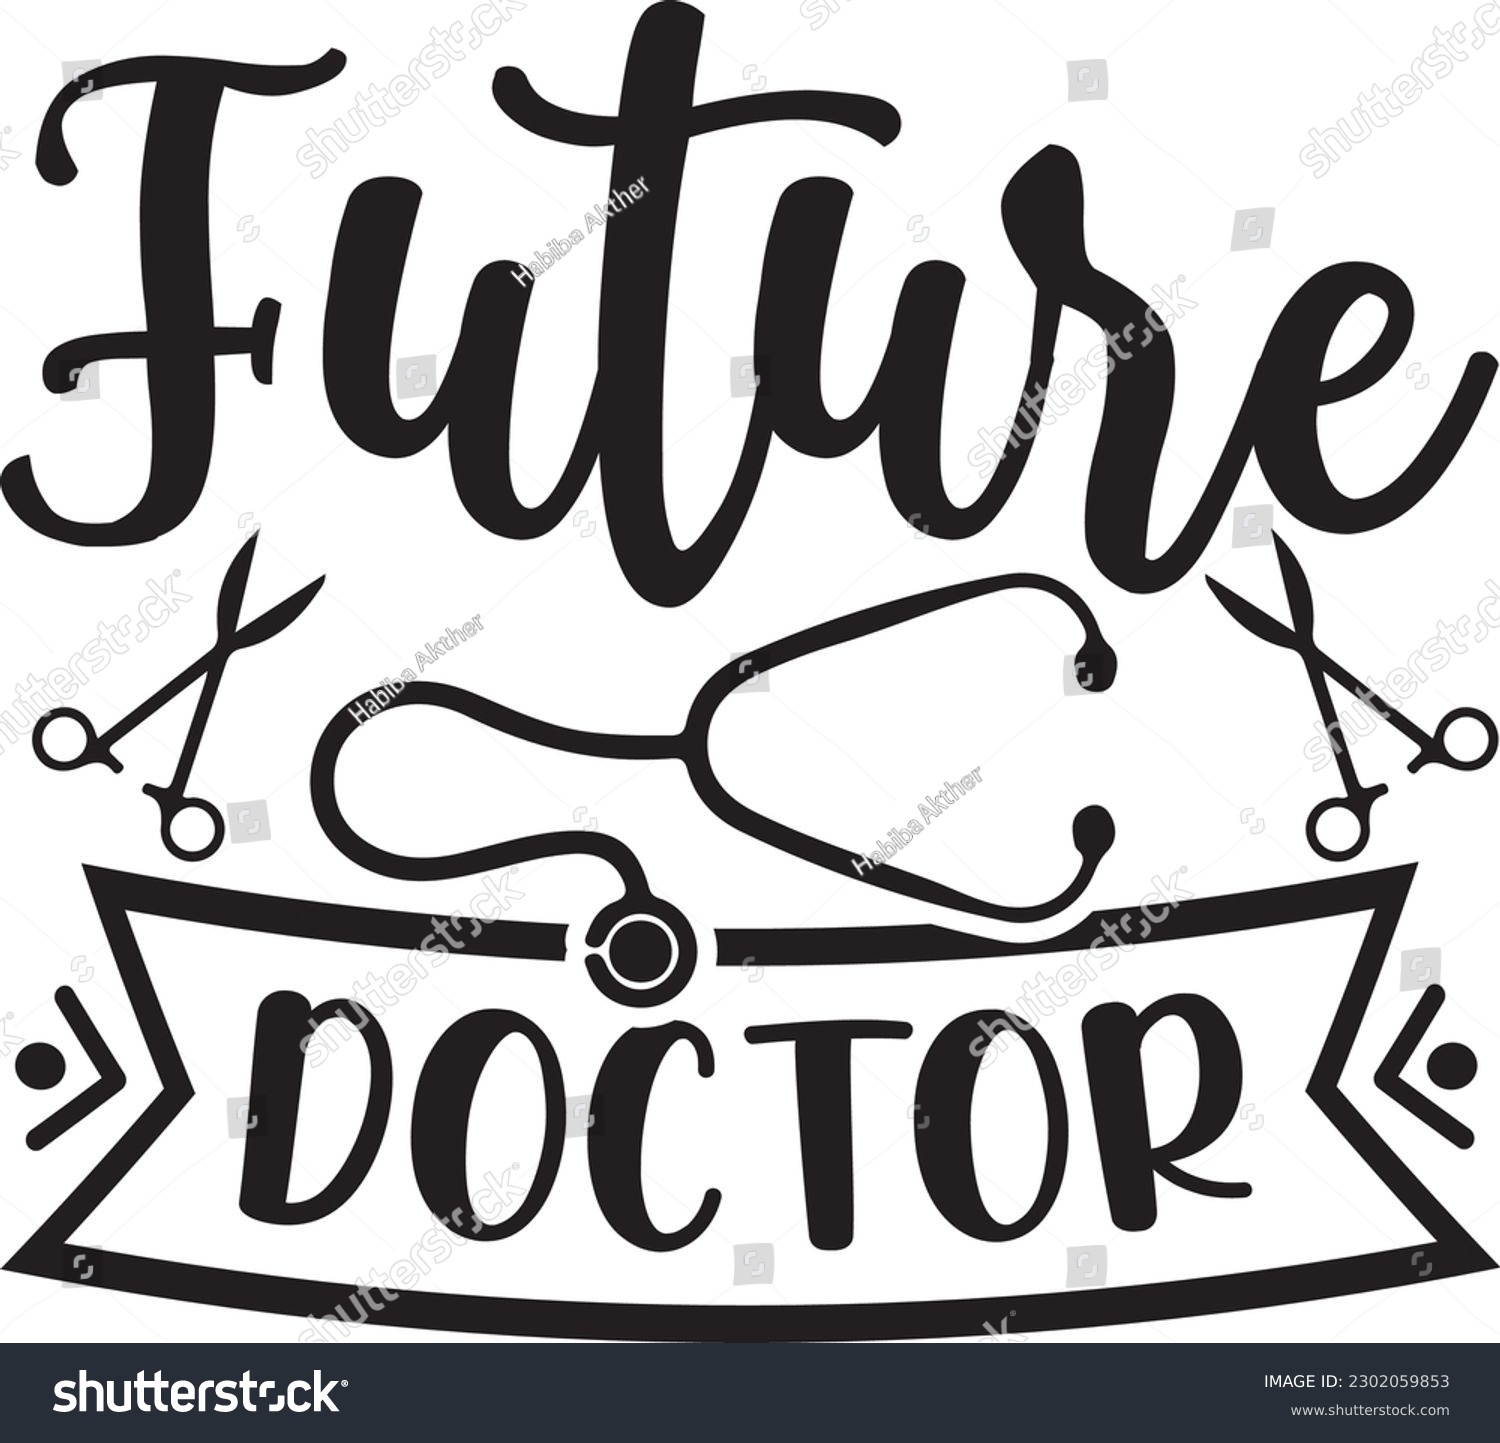 SVG of future doctor,Doctor's Day,#1 doctor,Doctor Svg,silhouette,Vector,Nurse SVG,Essential Worker,Hospital,Heart Stethoscope SVG,dentist svg,monogram svg,medical,Eps,uniform svg,Doctor Jacket svg, svg